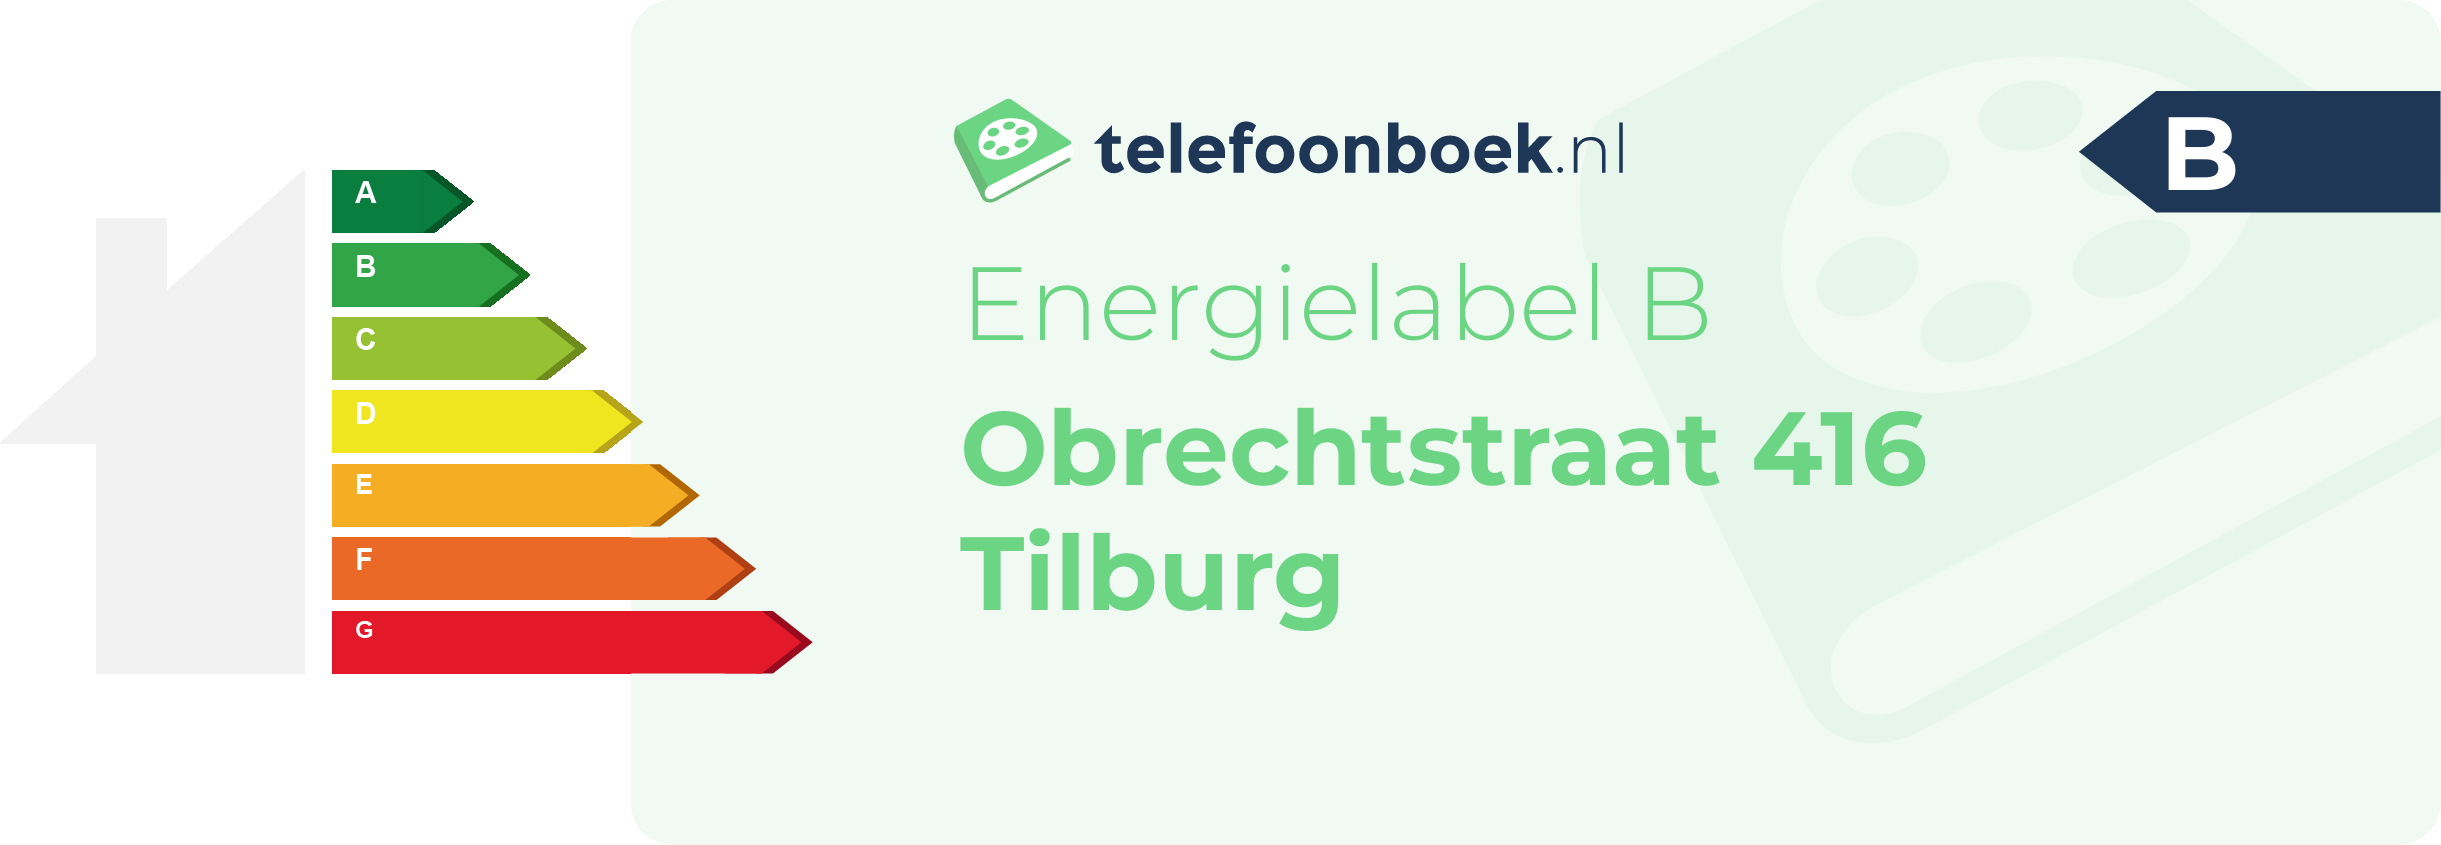 Energielabel Obrechtstraat 416 Tilburg